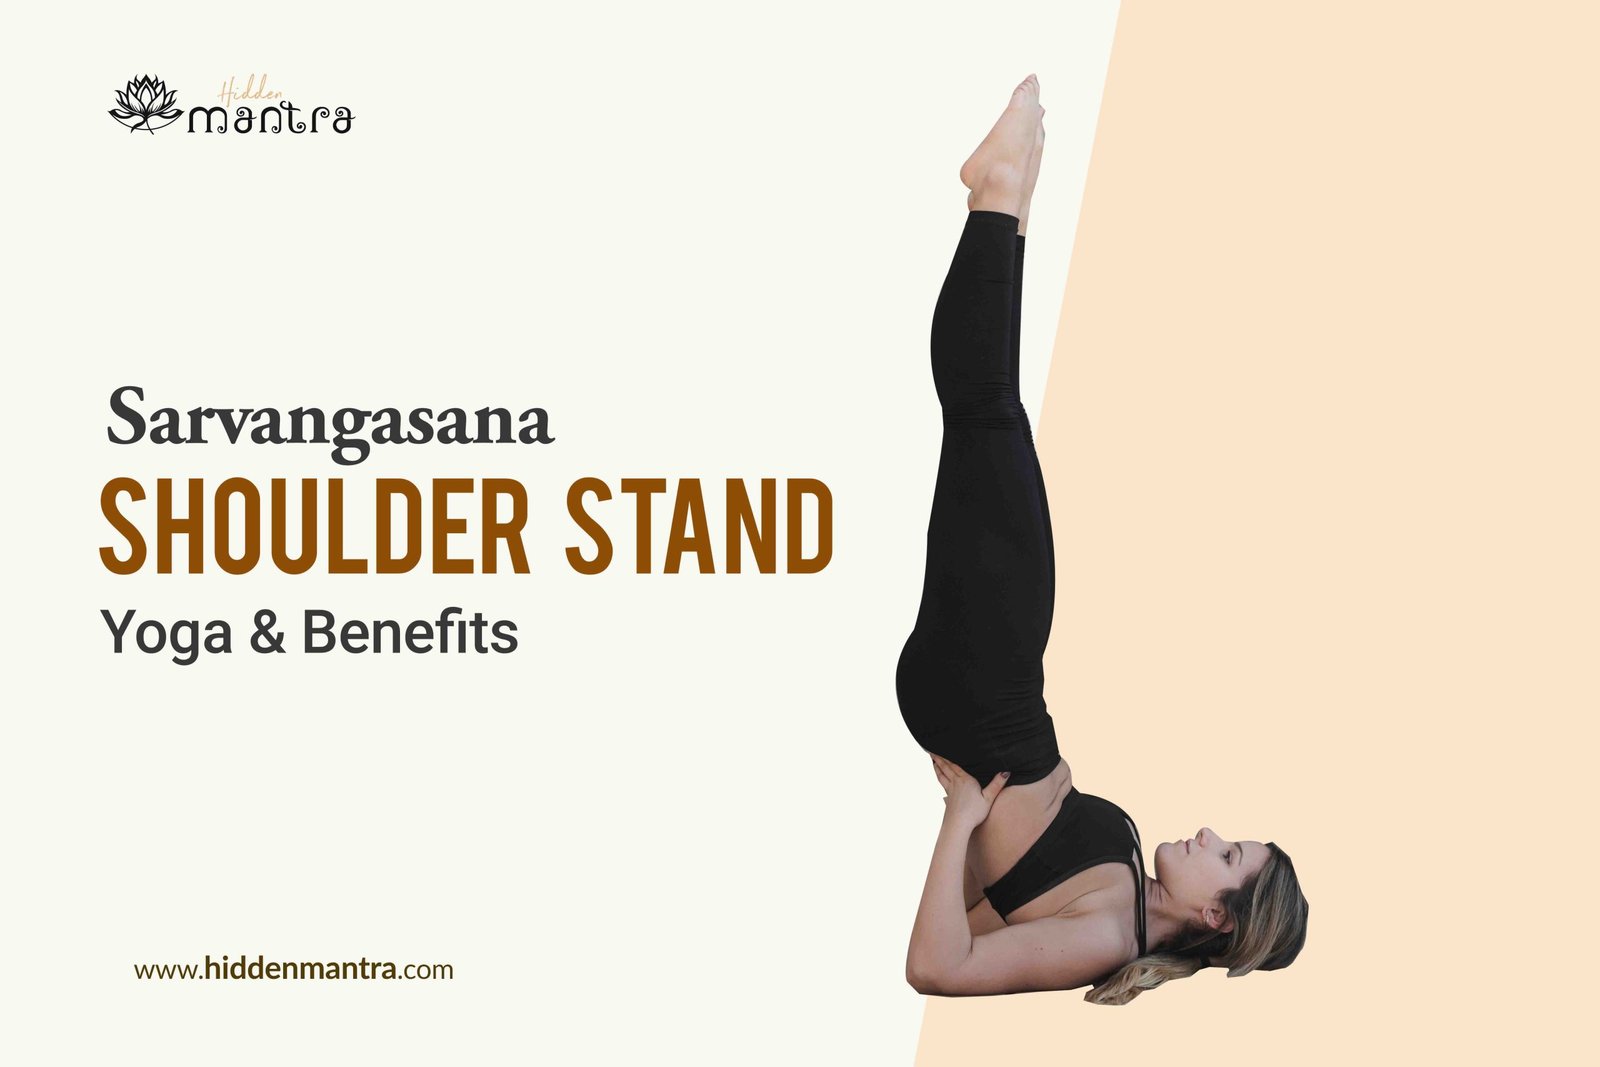 Trikonasana | Triangle Pose Steps) | Benefits | Precautions -7pranayama |  Face yoga facial exercises, How to do yoga, Yoga videos for beginners